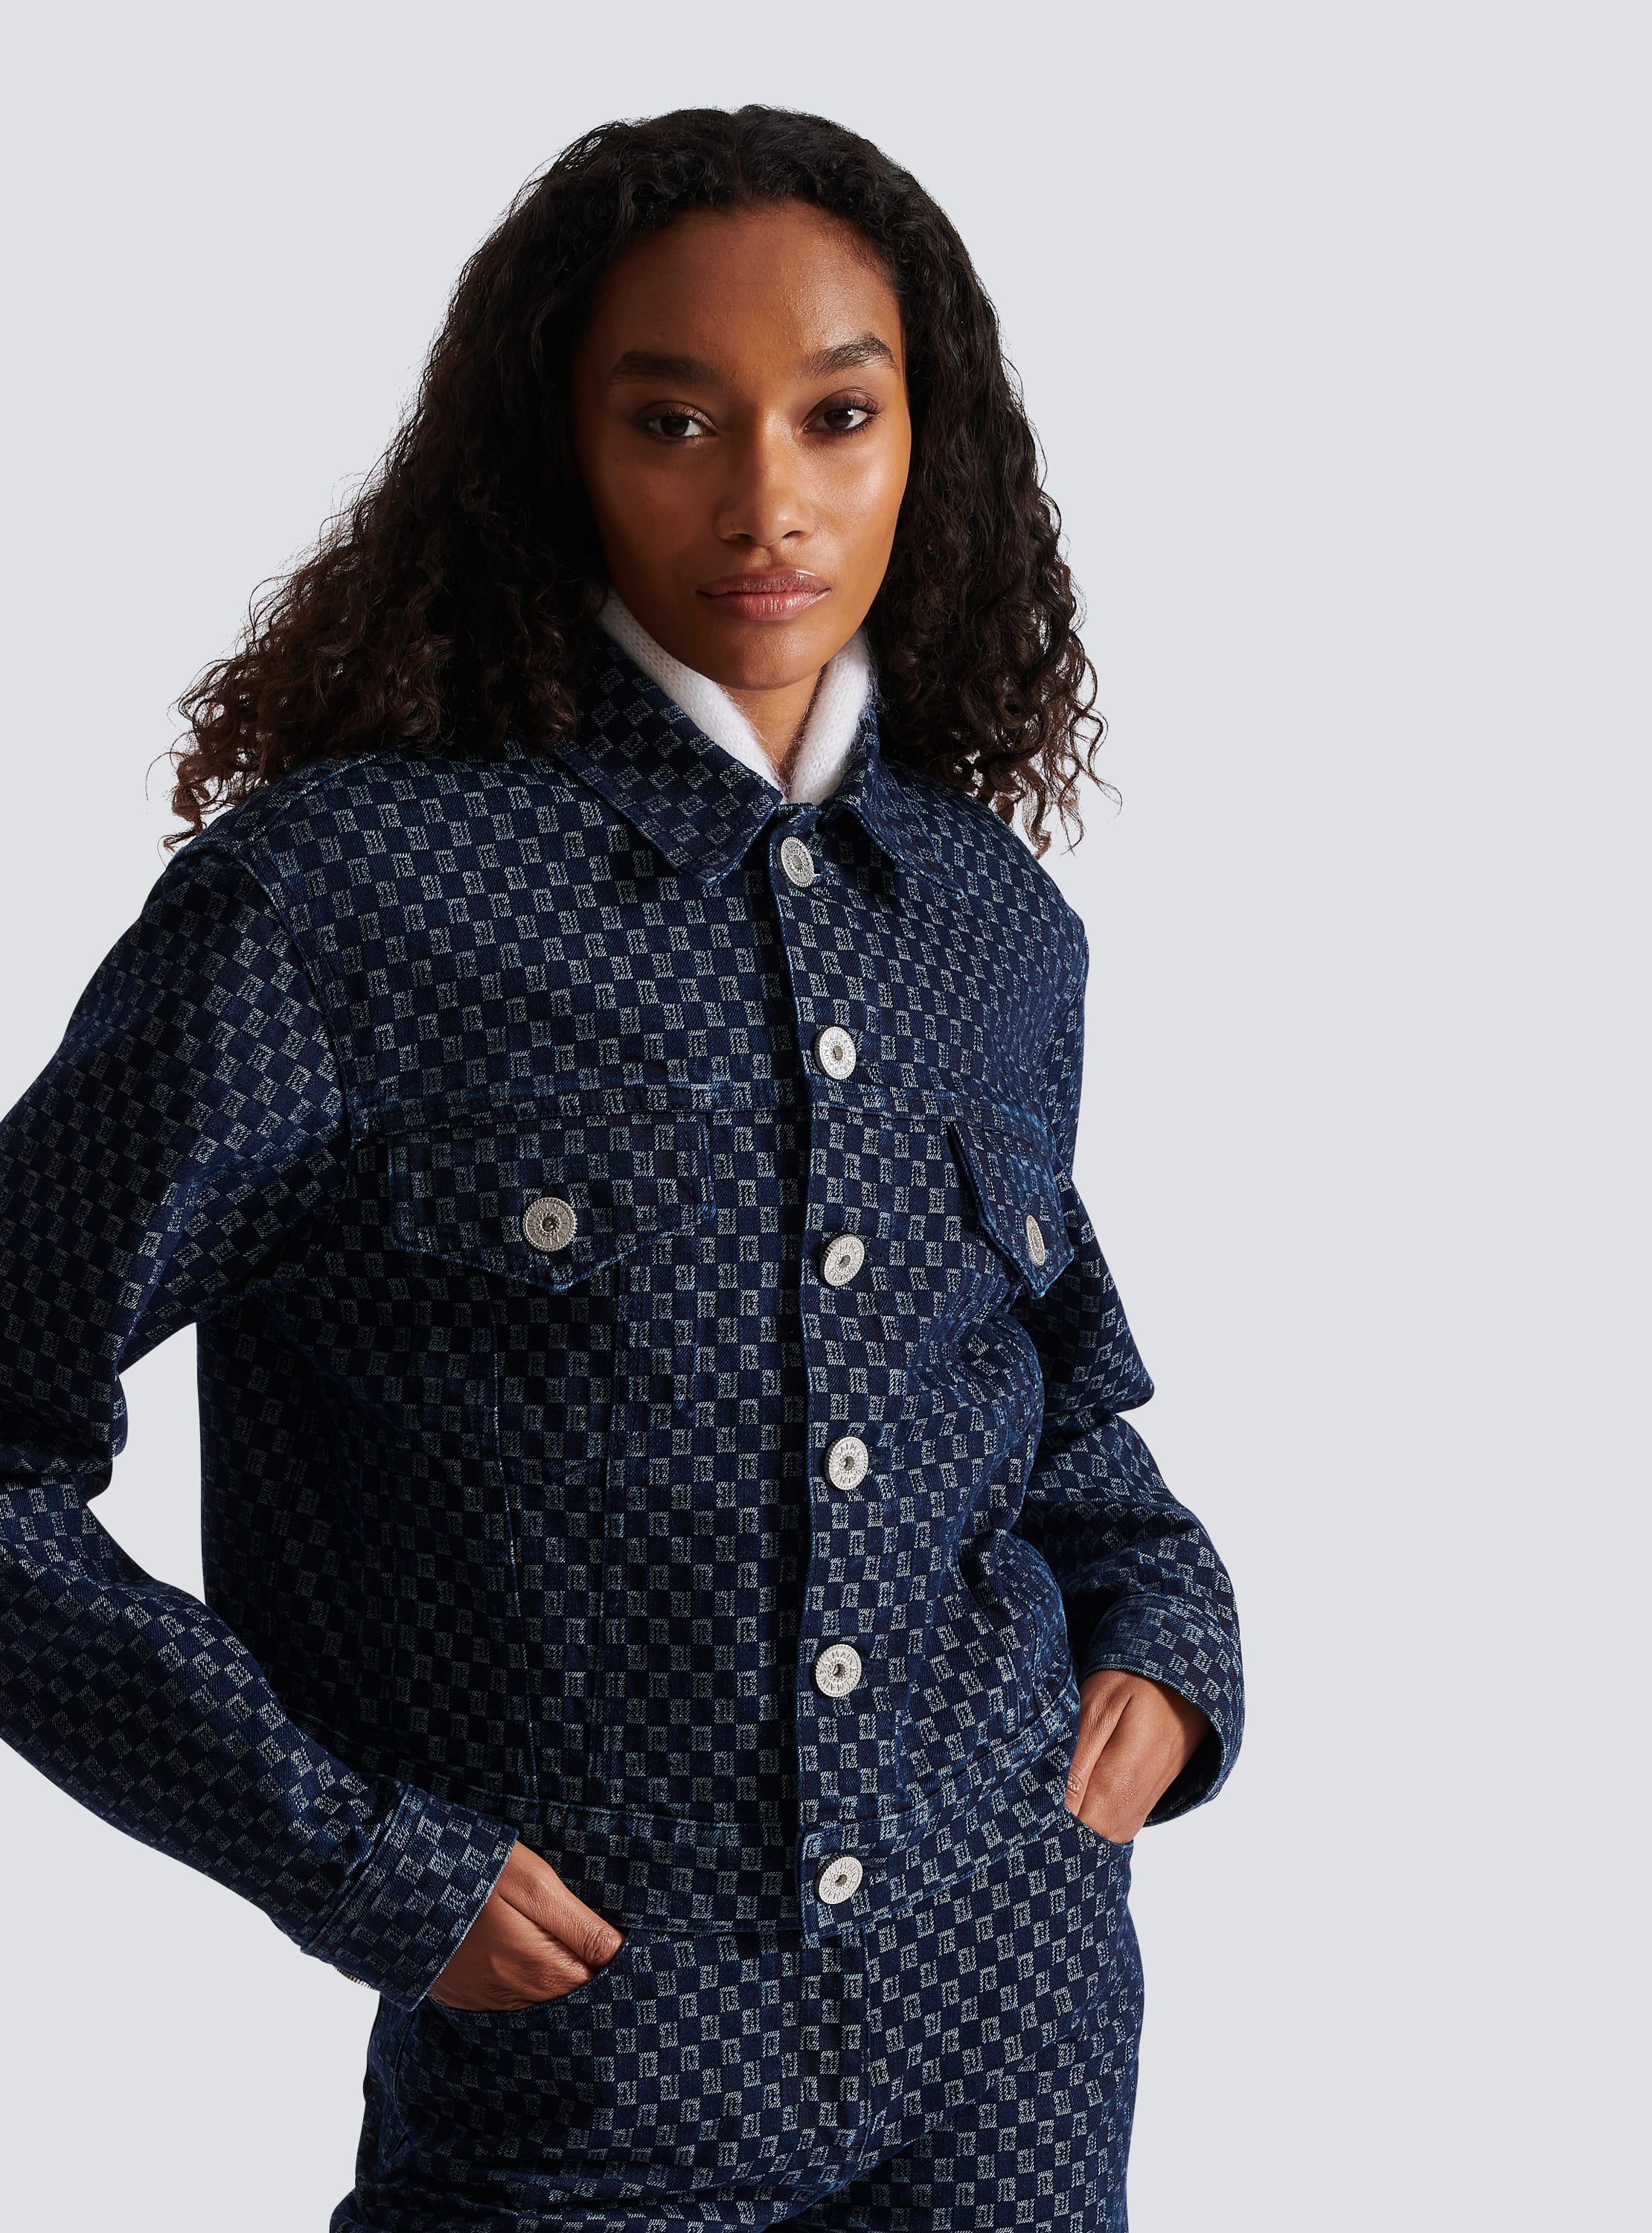 Louis Vuitton Monogram Jacquard Denim Jacket